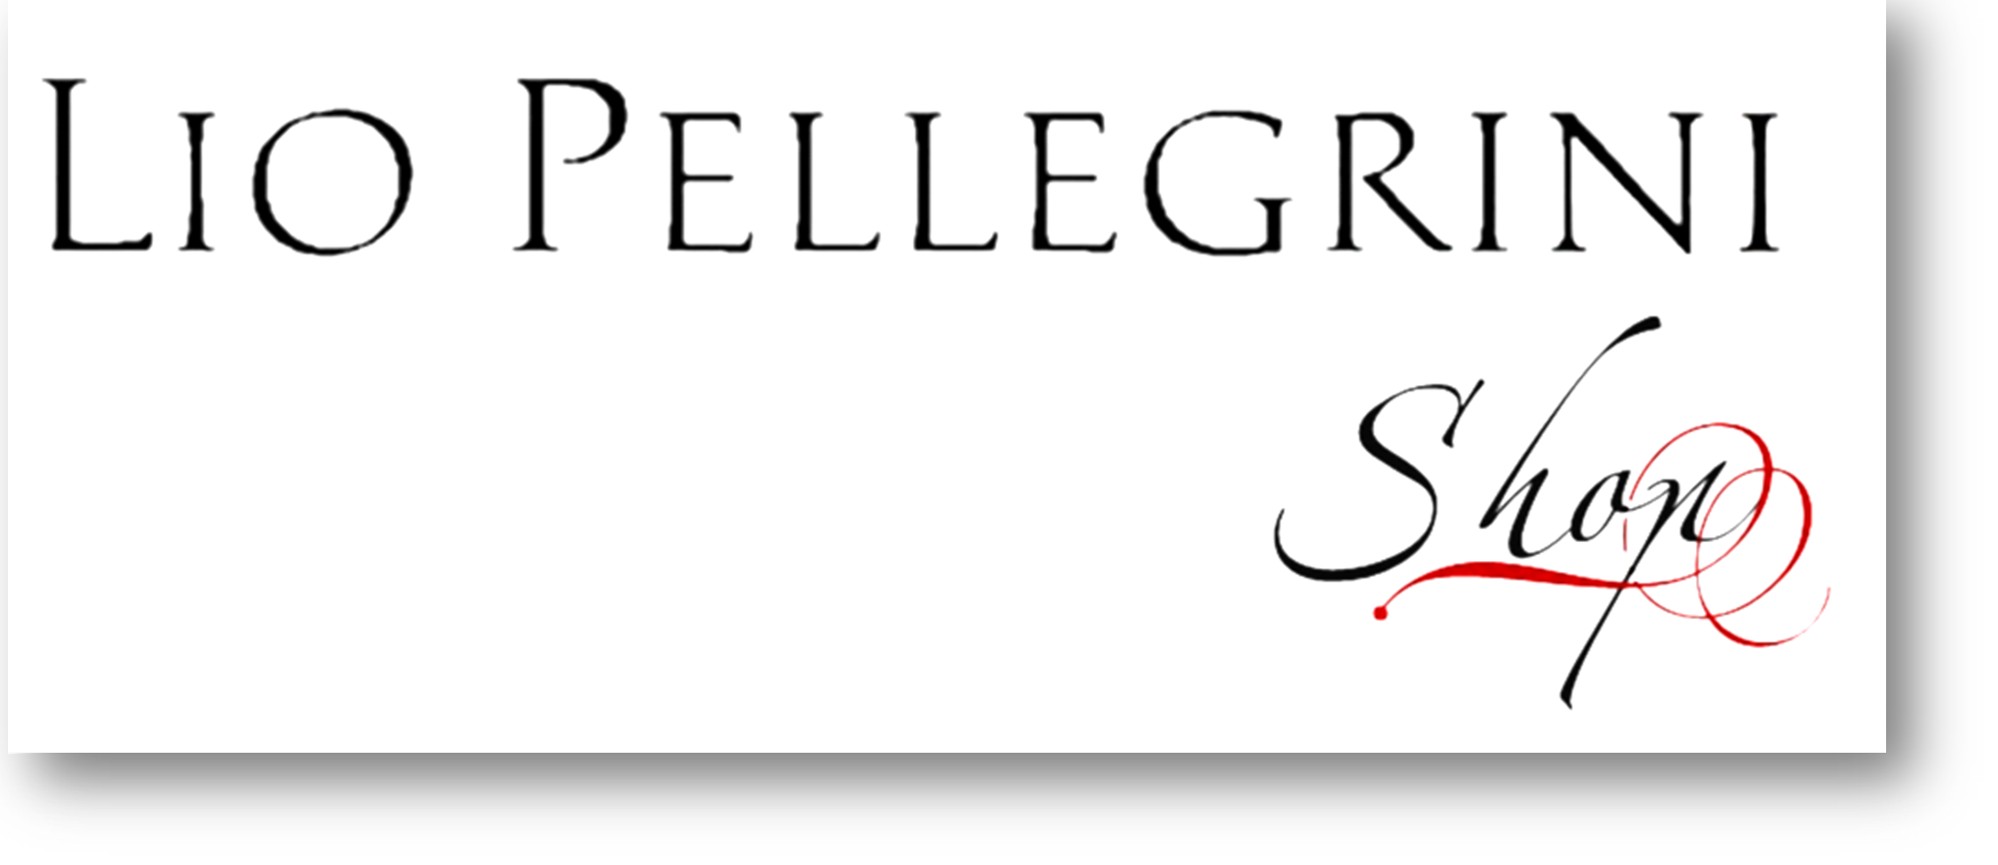 Lio Pellegrini Shop